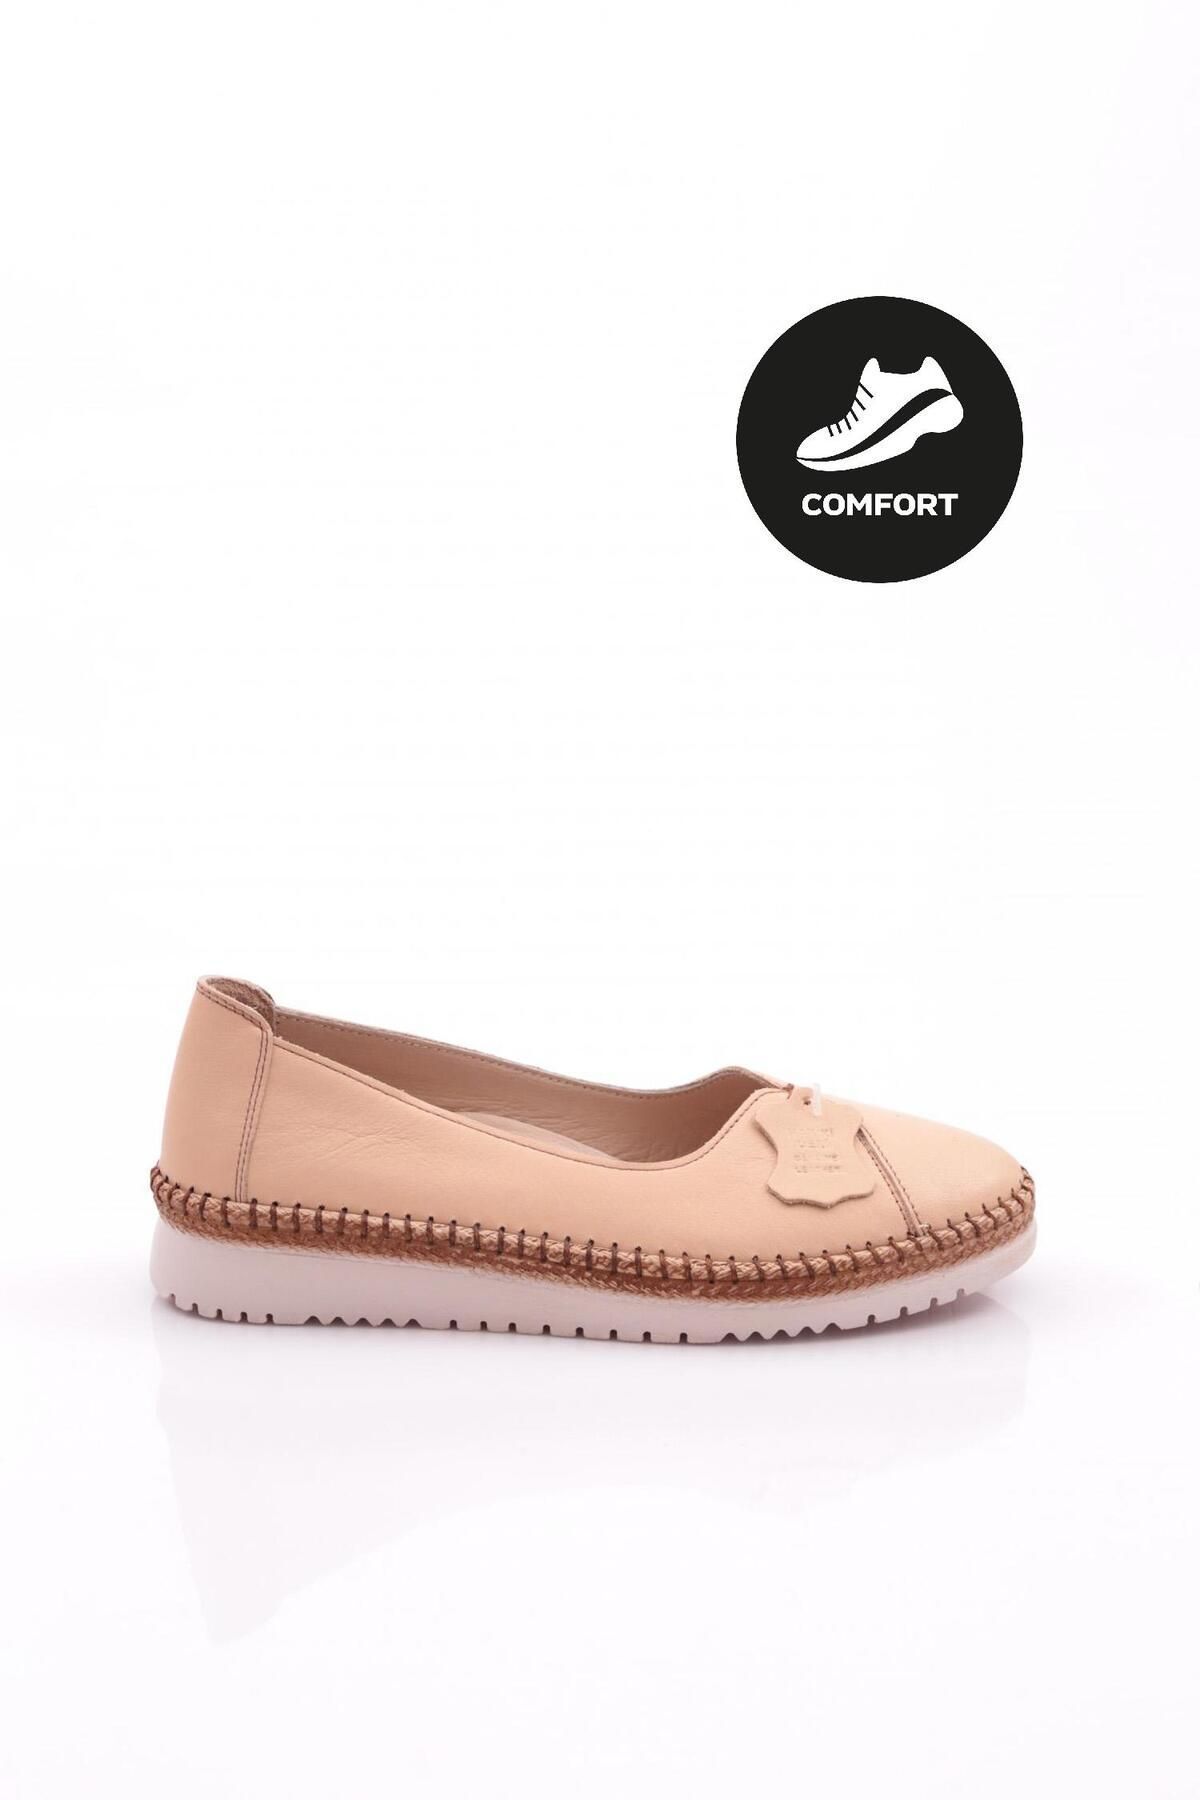 Dgn P56 Kadın Comfort Ayakkabı Bej